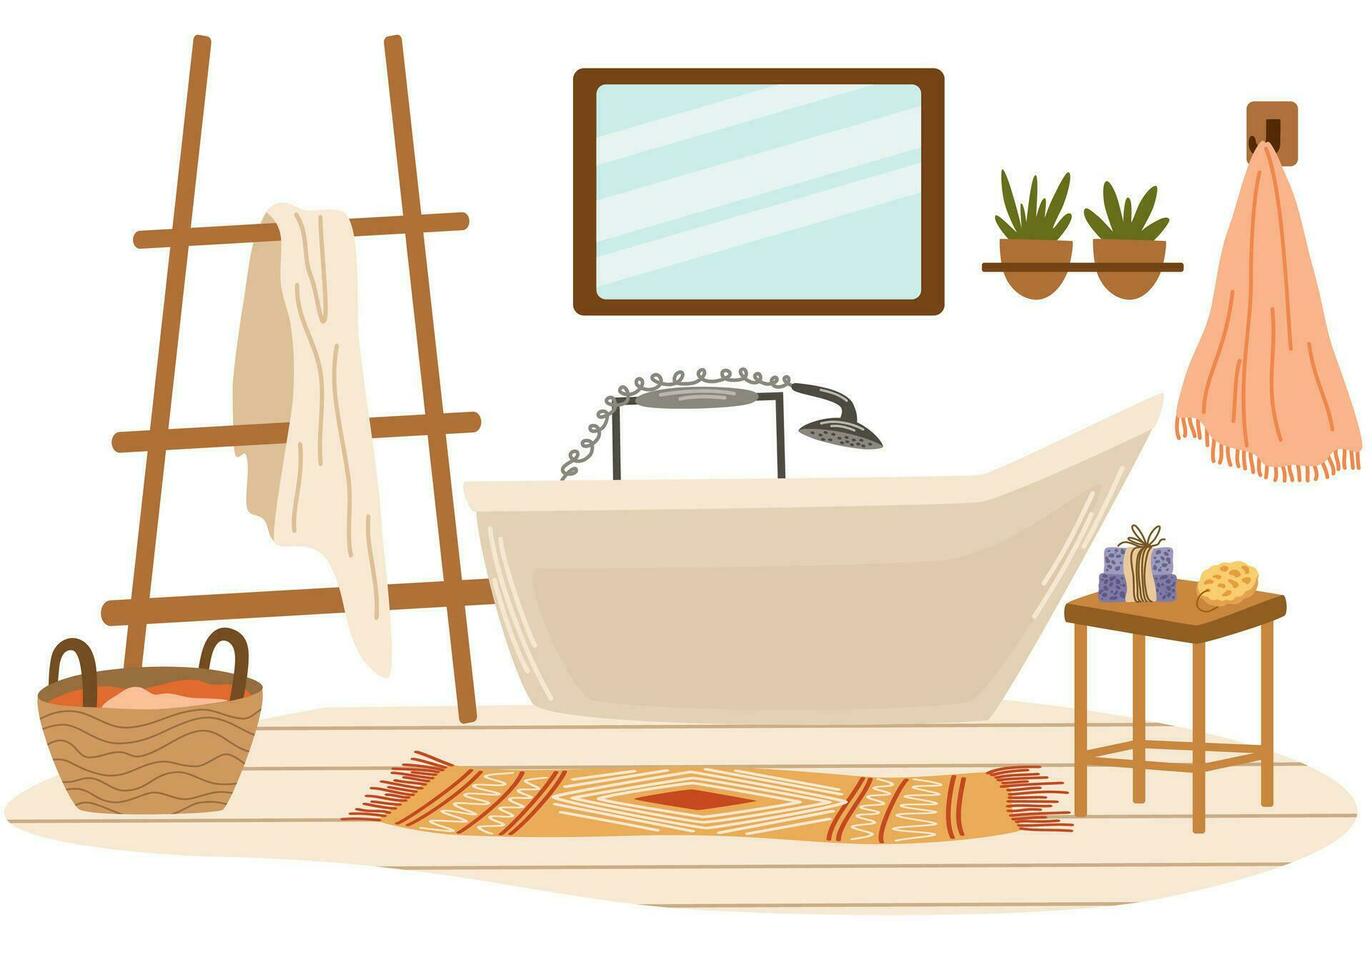 Badezimmer Innere. Bad, Handtuch auf ein Aufhänger, Tabelle mit Kerzen und Seife, Teppich, Korbweide Korb mit Wäscherei, Zimmerpflanze. eben Vektor Illustration isoliert auf Weiß Hintergrund